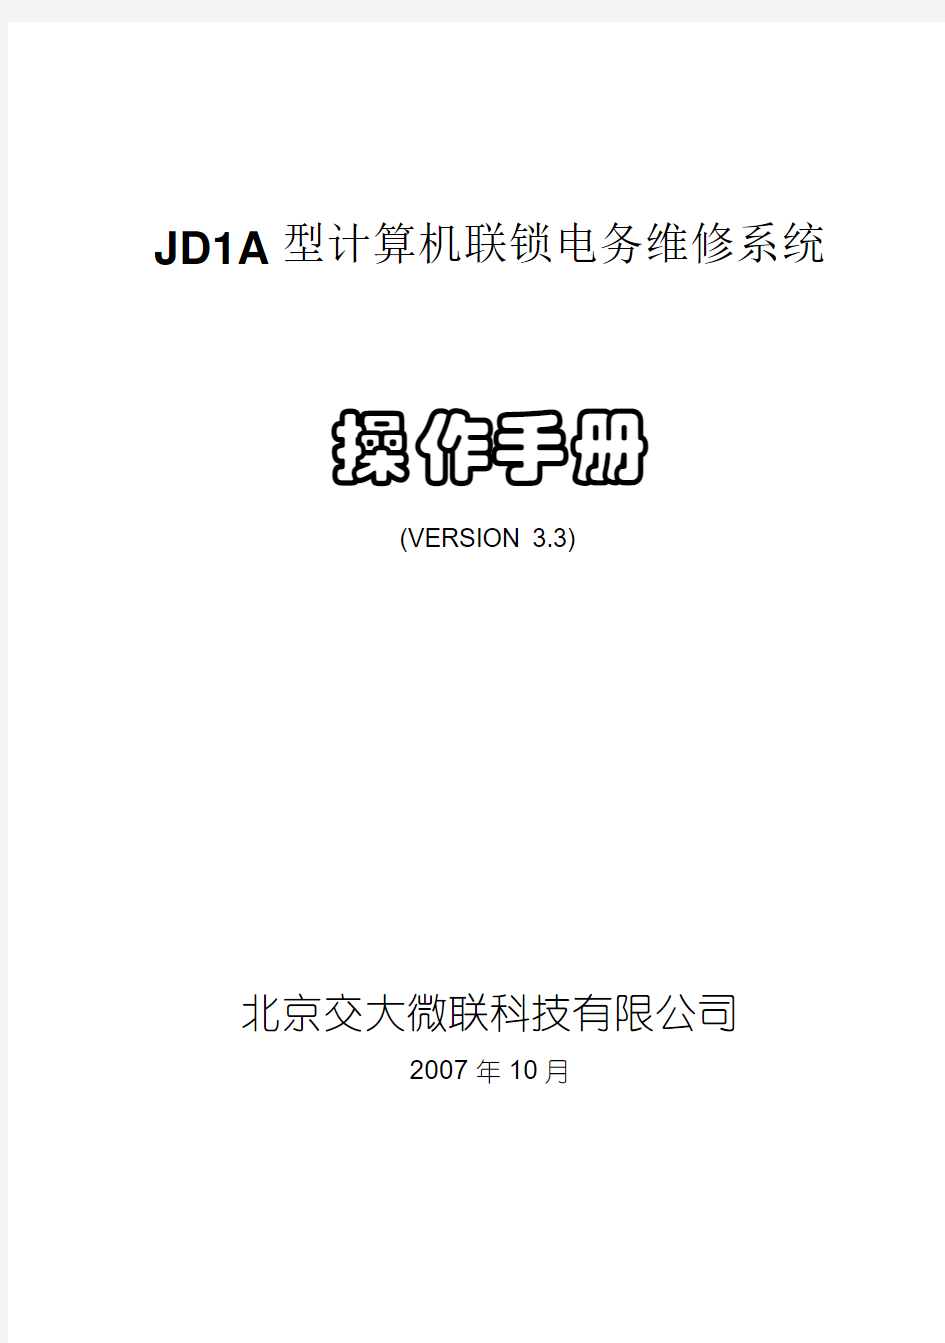 2.JD1A型计算机联锁电务维修系统操作手册(v3.3)